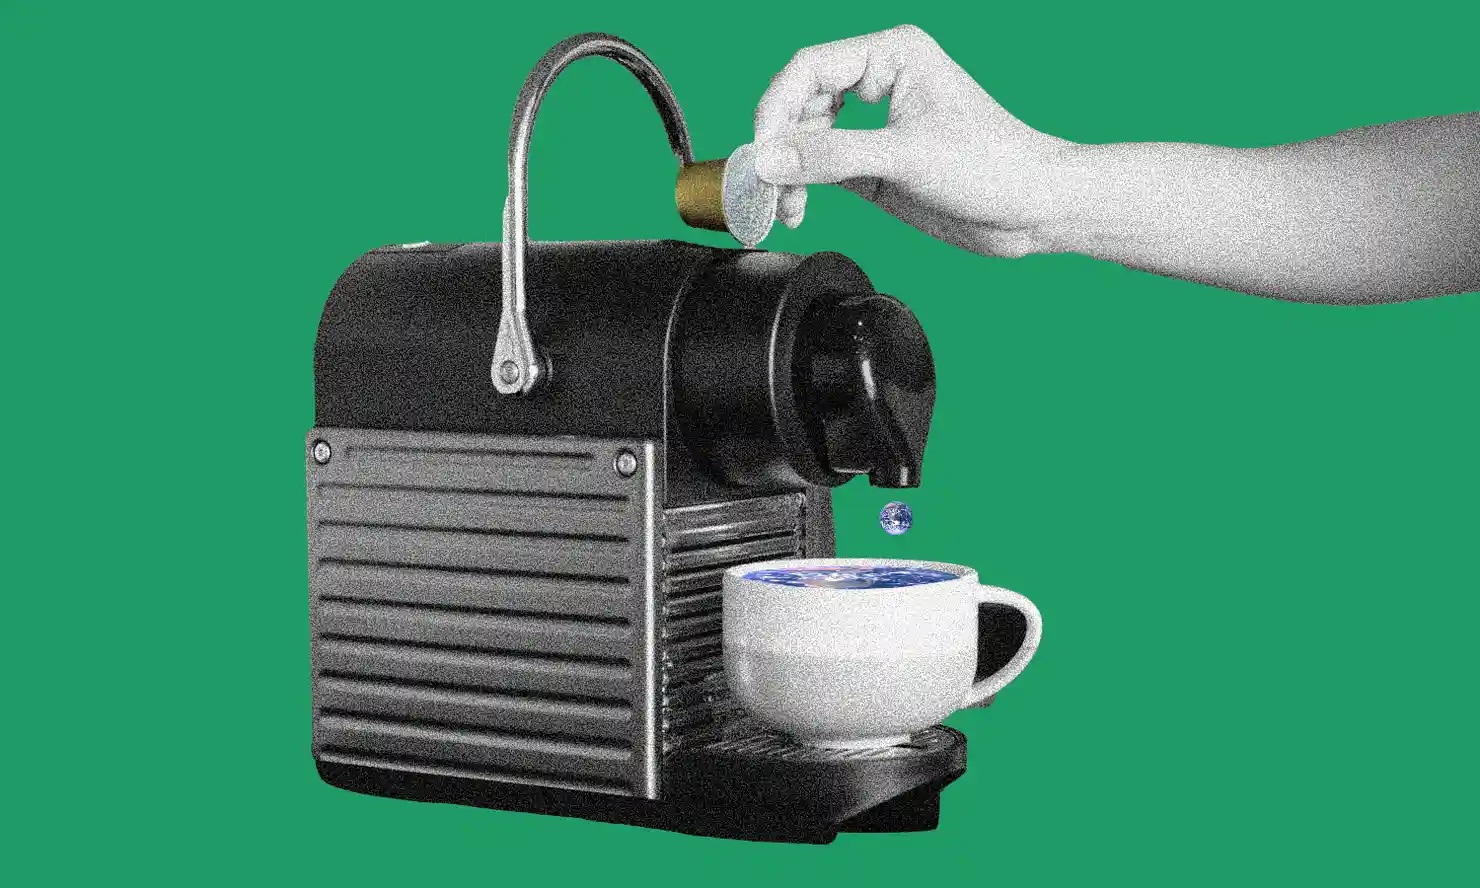 Olvídate de las cápsulas con estas cafeteras superautomáticas: Un café de  calidad sin contaminar